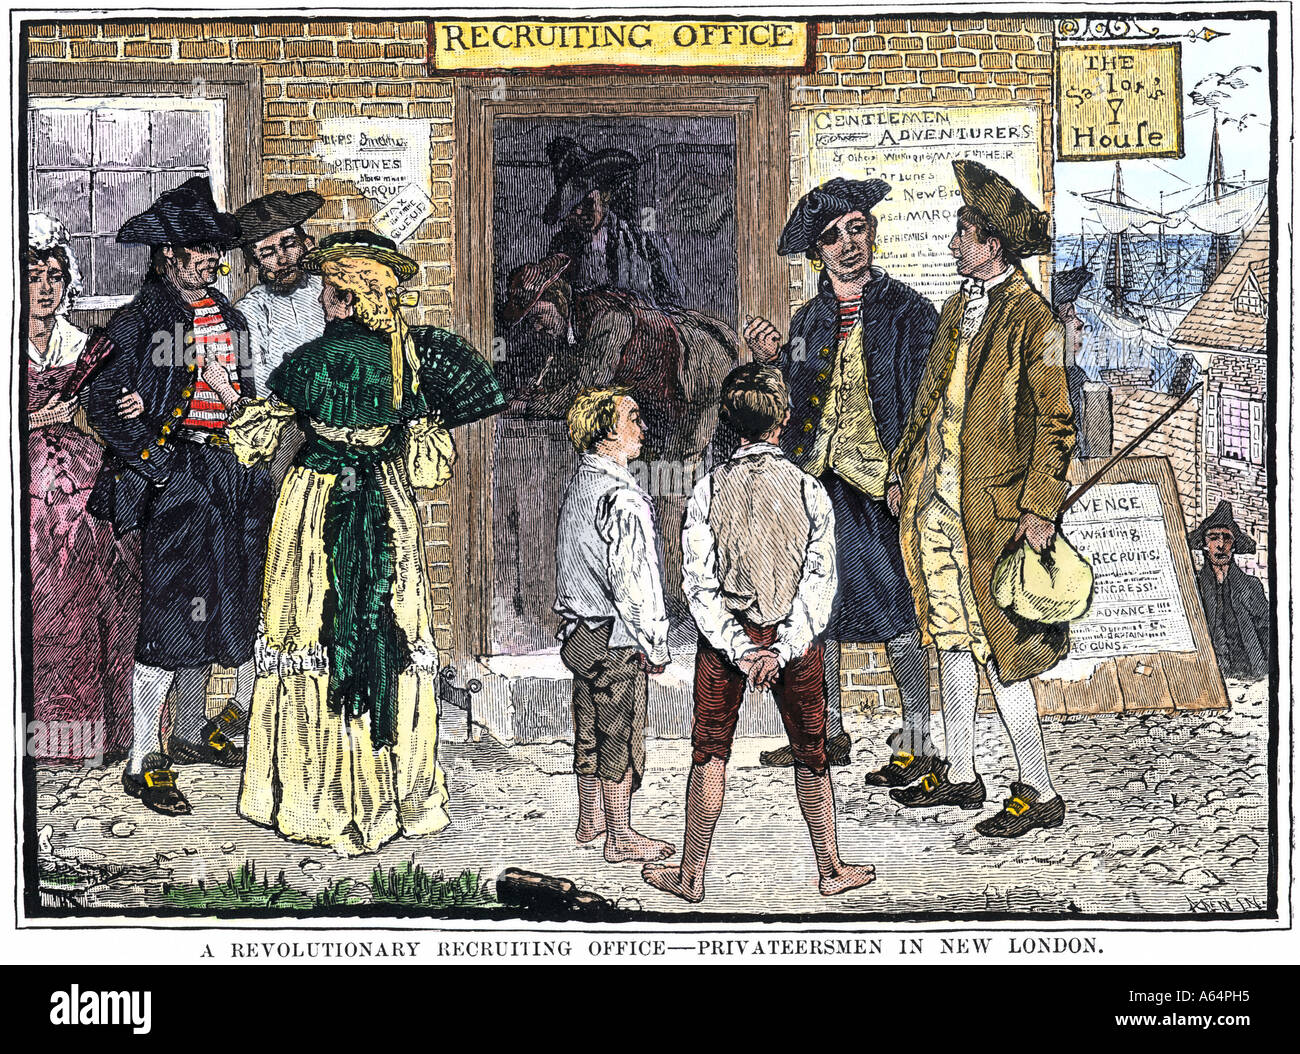 Recruiting privateersmen die Sache Amerikas im revolutionären Krieg in New London CT zu dienen. Hand - farbige Holzschnitt von Howard Pyle Abbildung Stockfoto